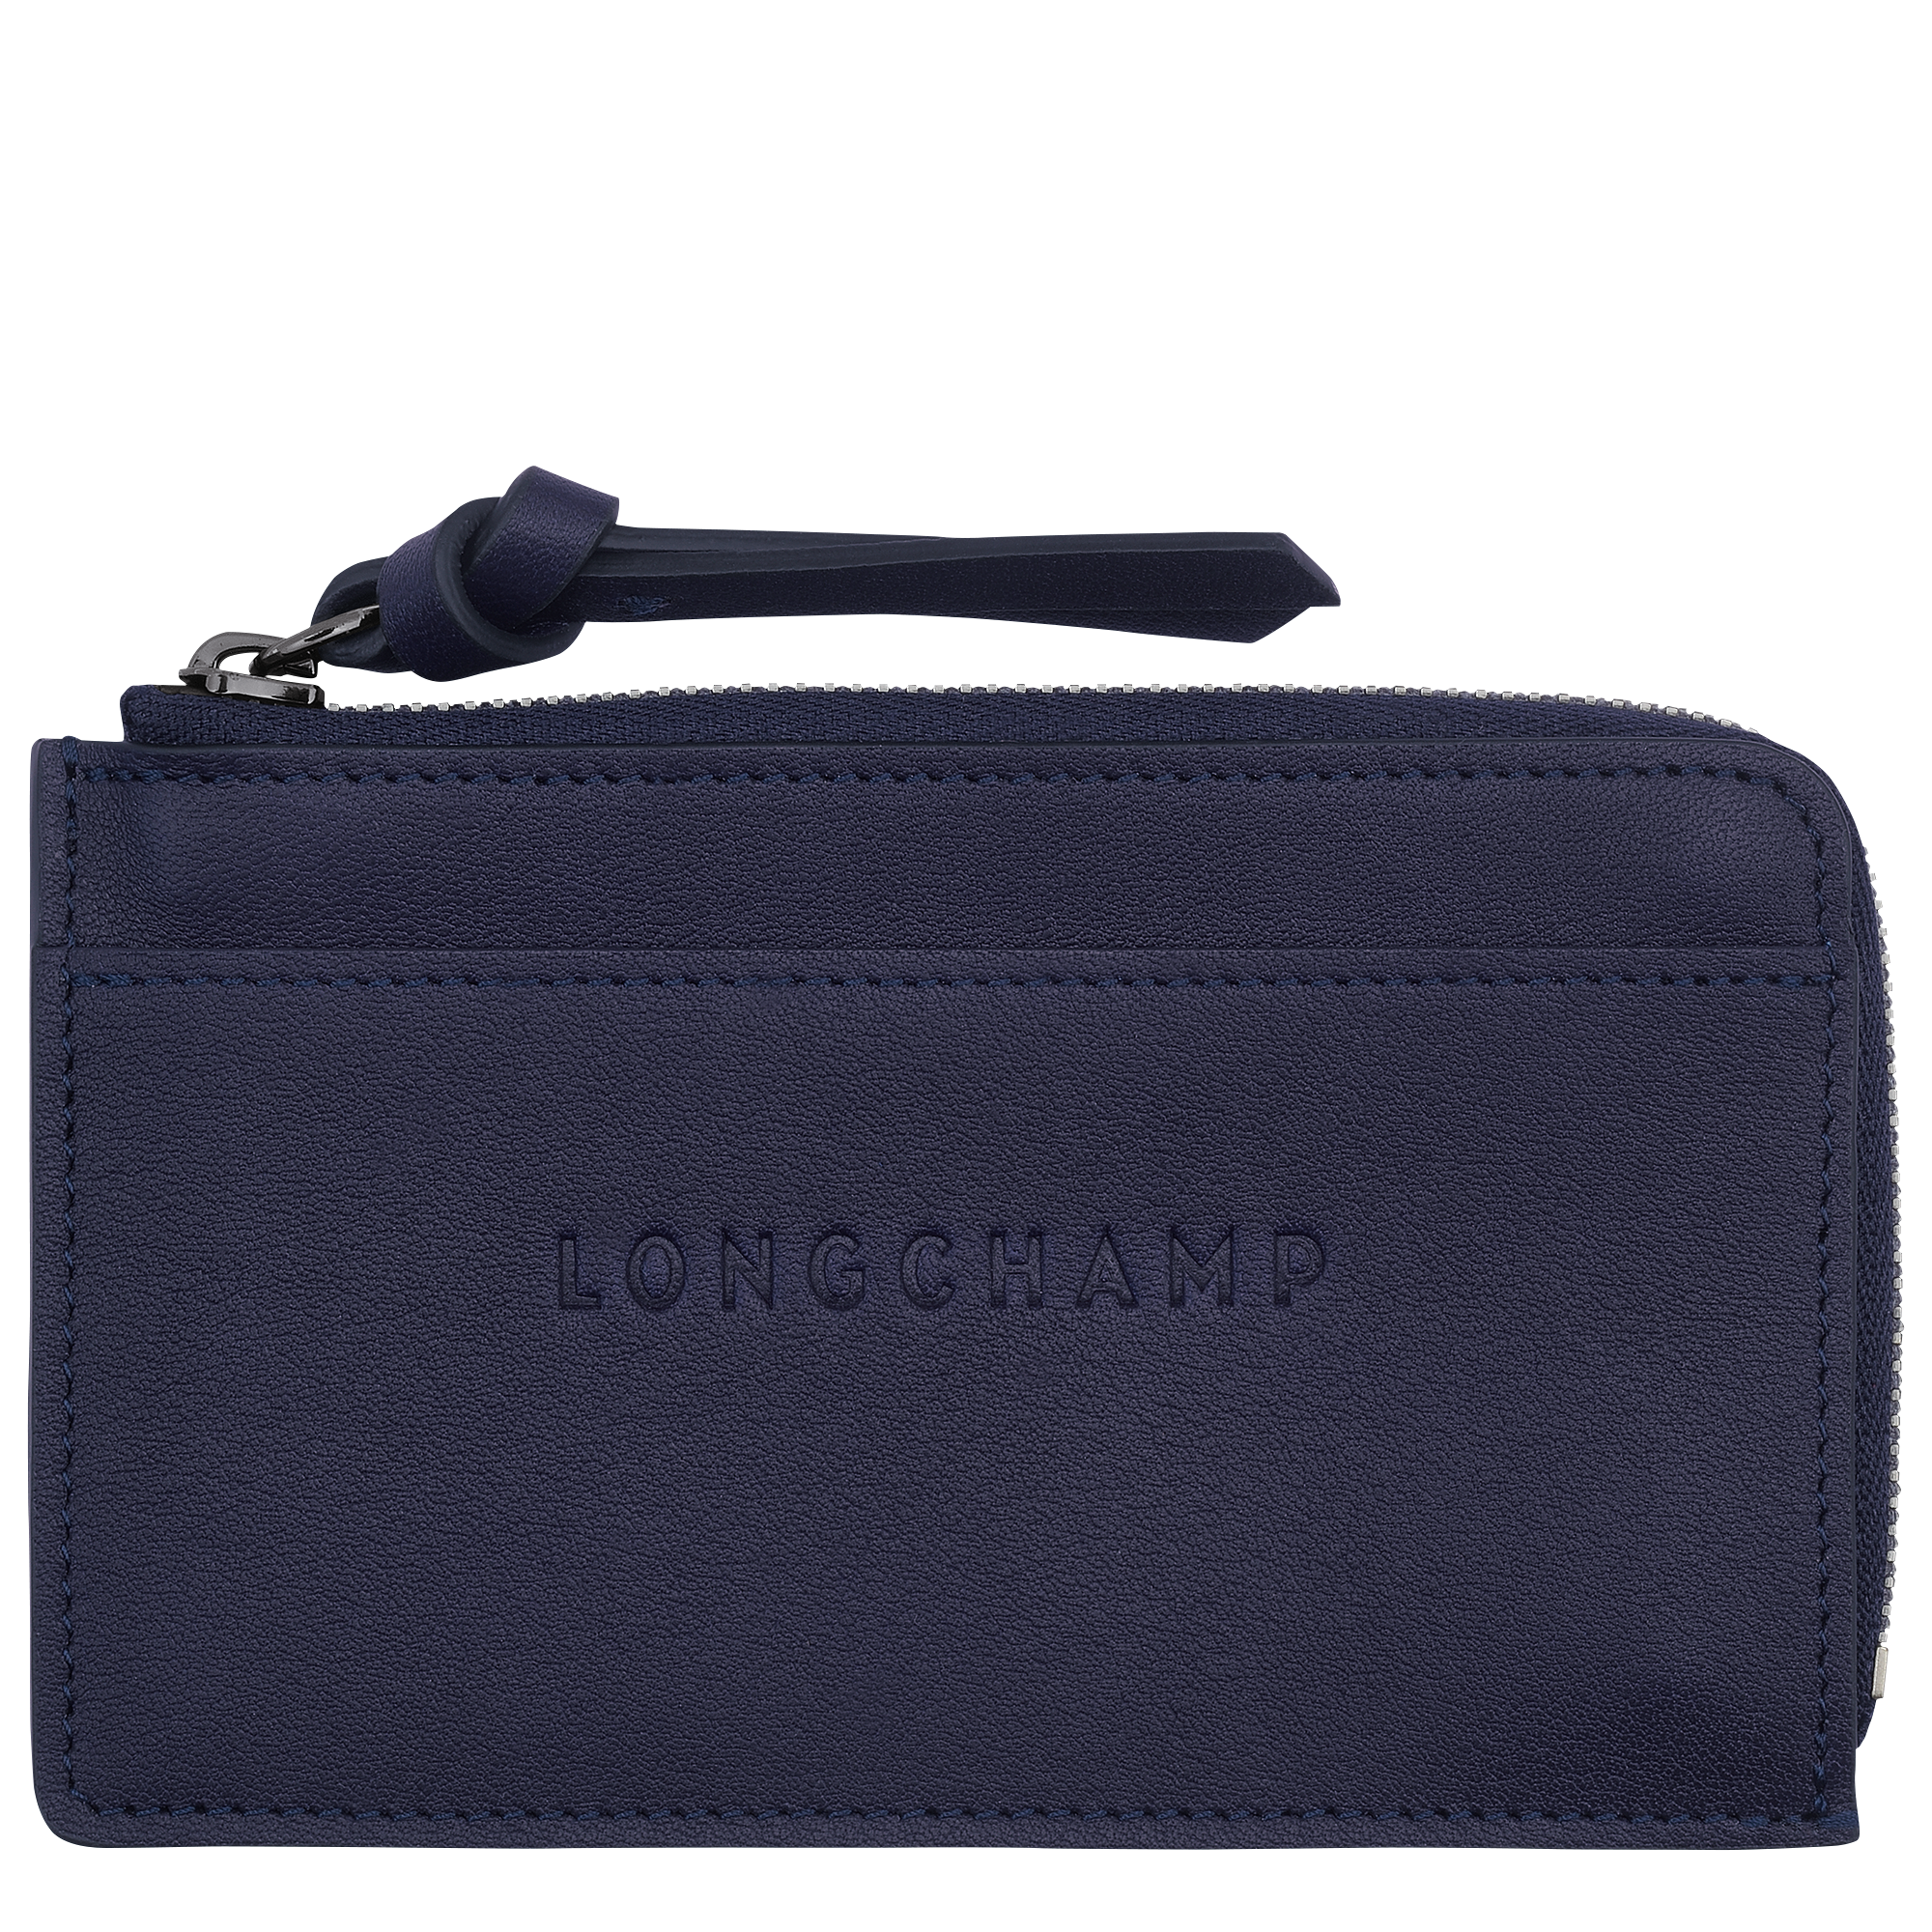 Longchamp 3D 系列 卡片夾, 藍莓色